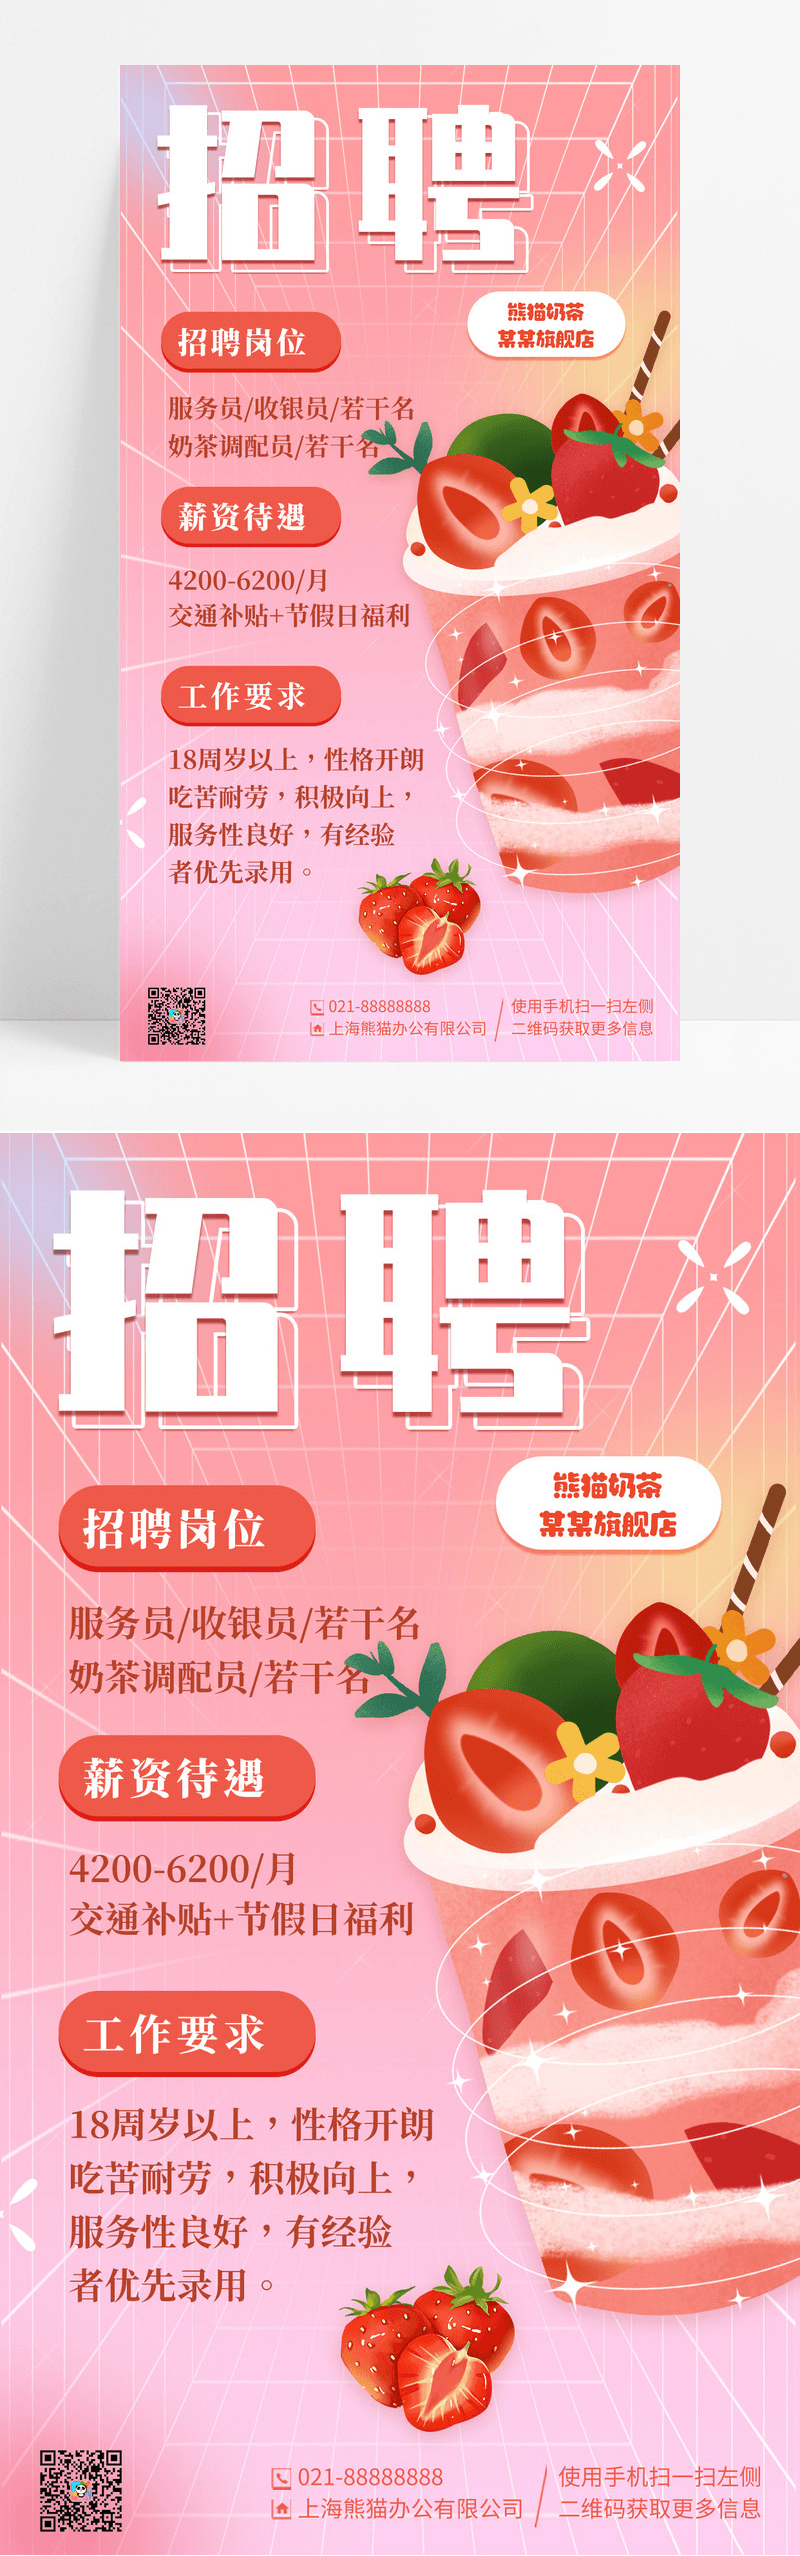 粉色弥散奶茶店招聘手机宣传海报